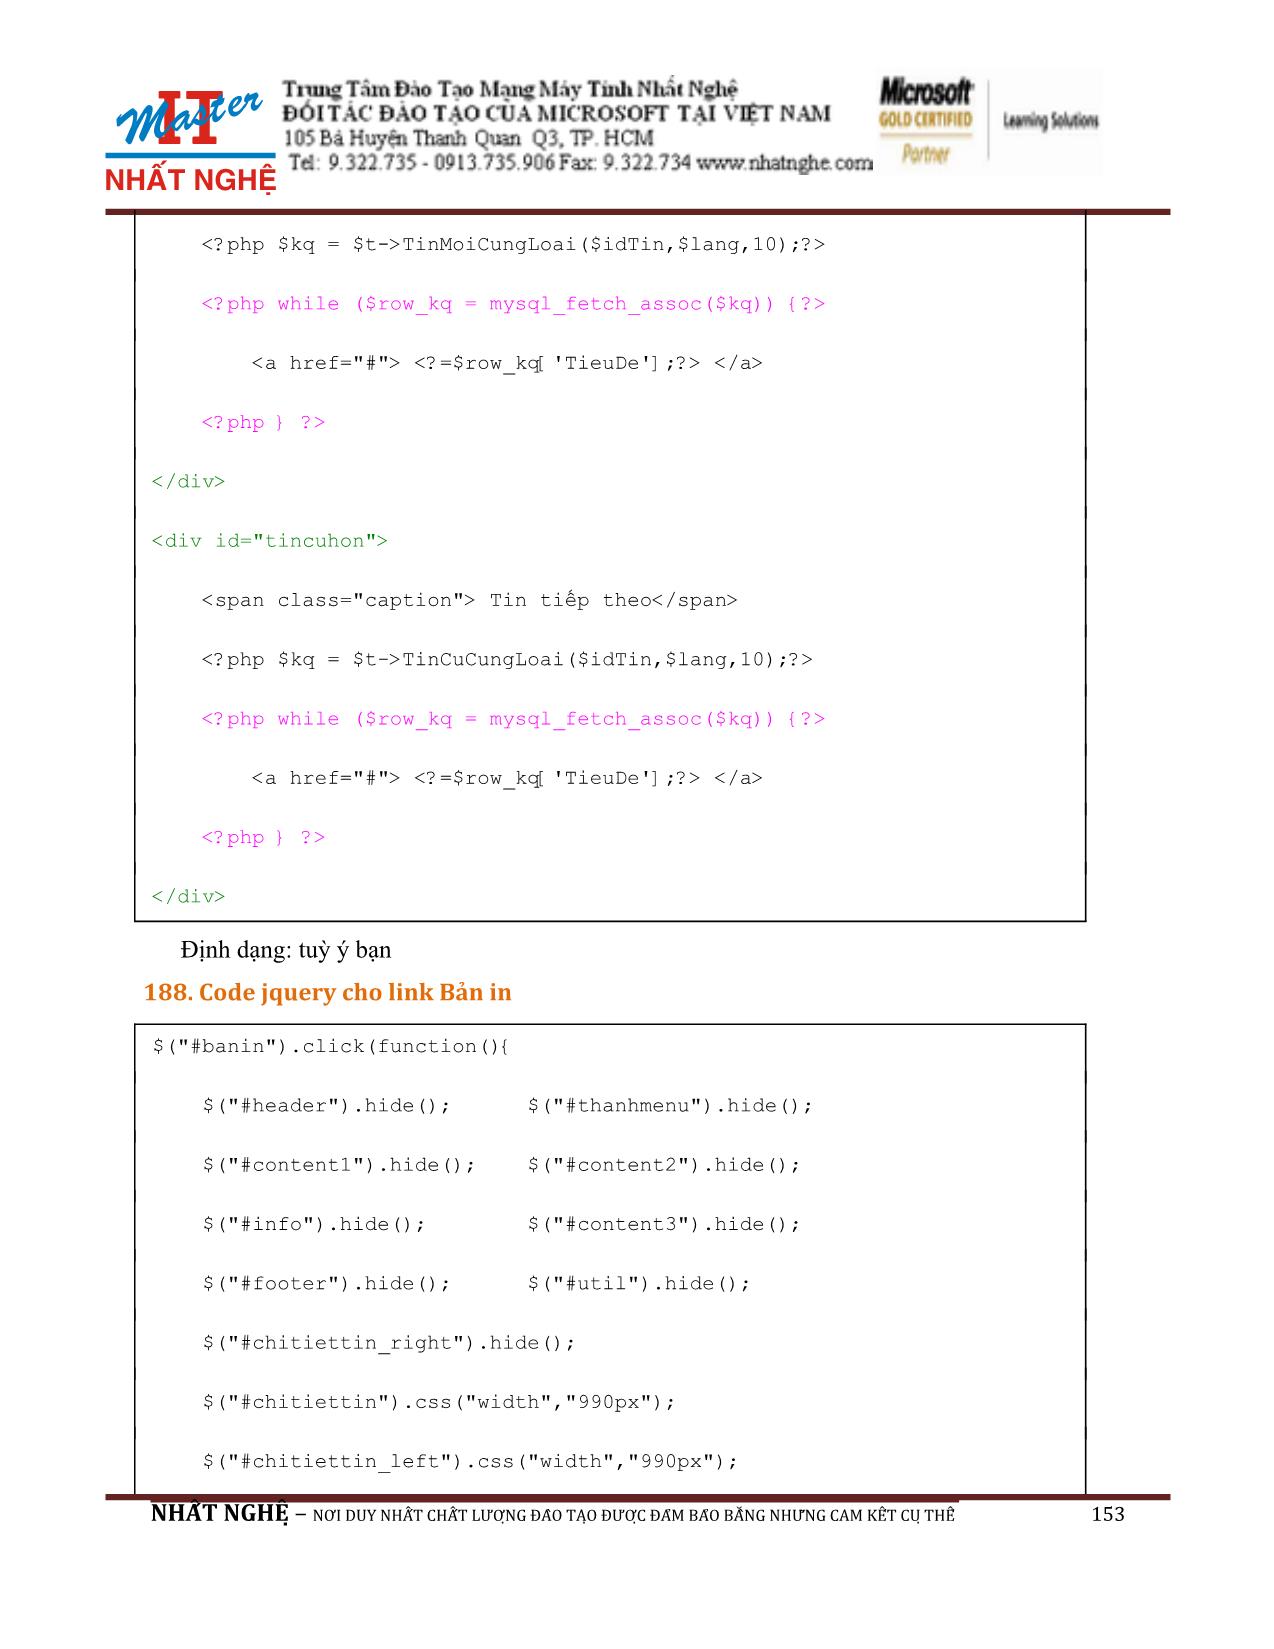 Giáo trình Hướng dẫn thiết kế Web PHP và MySQL (Phần 2) trang 5